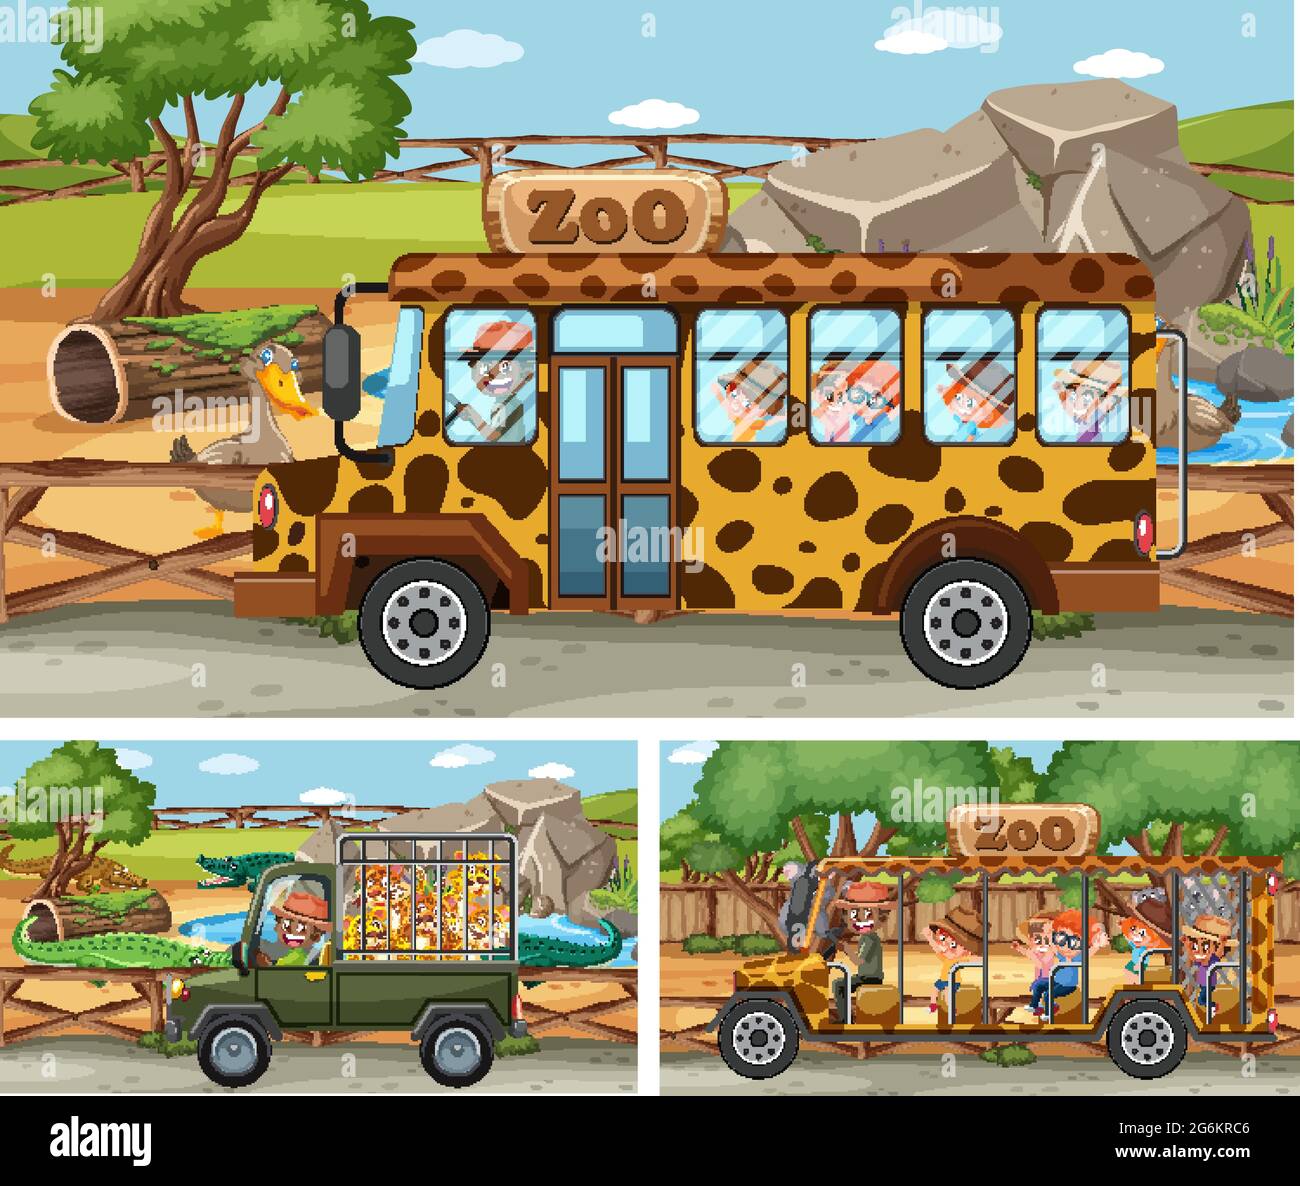 Différentes scènes de safari avec des animaux et des dessins de personnage de dessin animé d'enfants Illustration de Vecteur